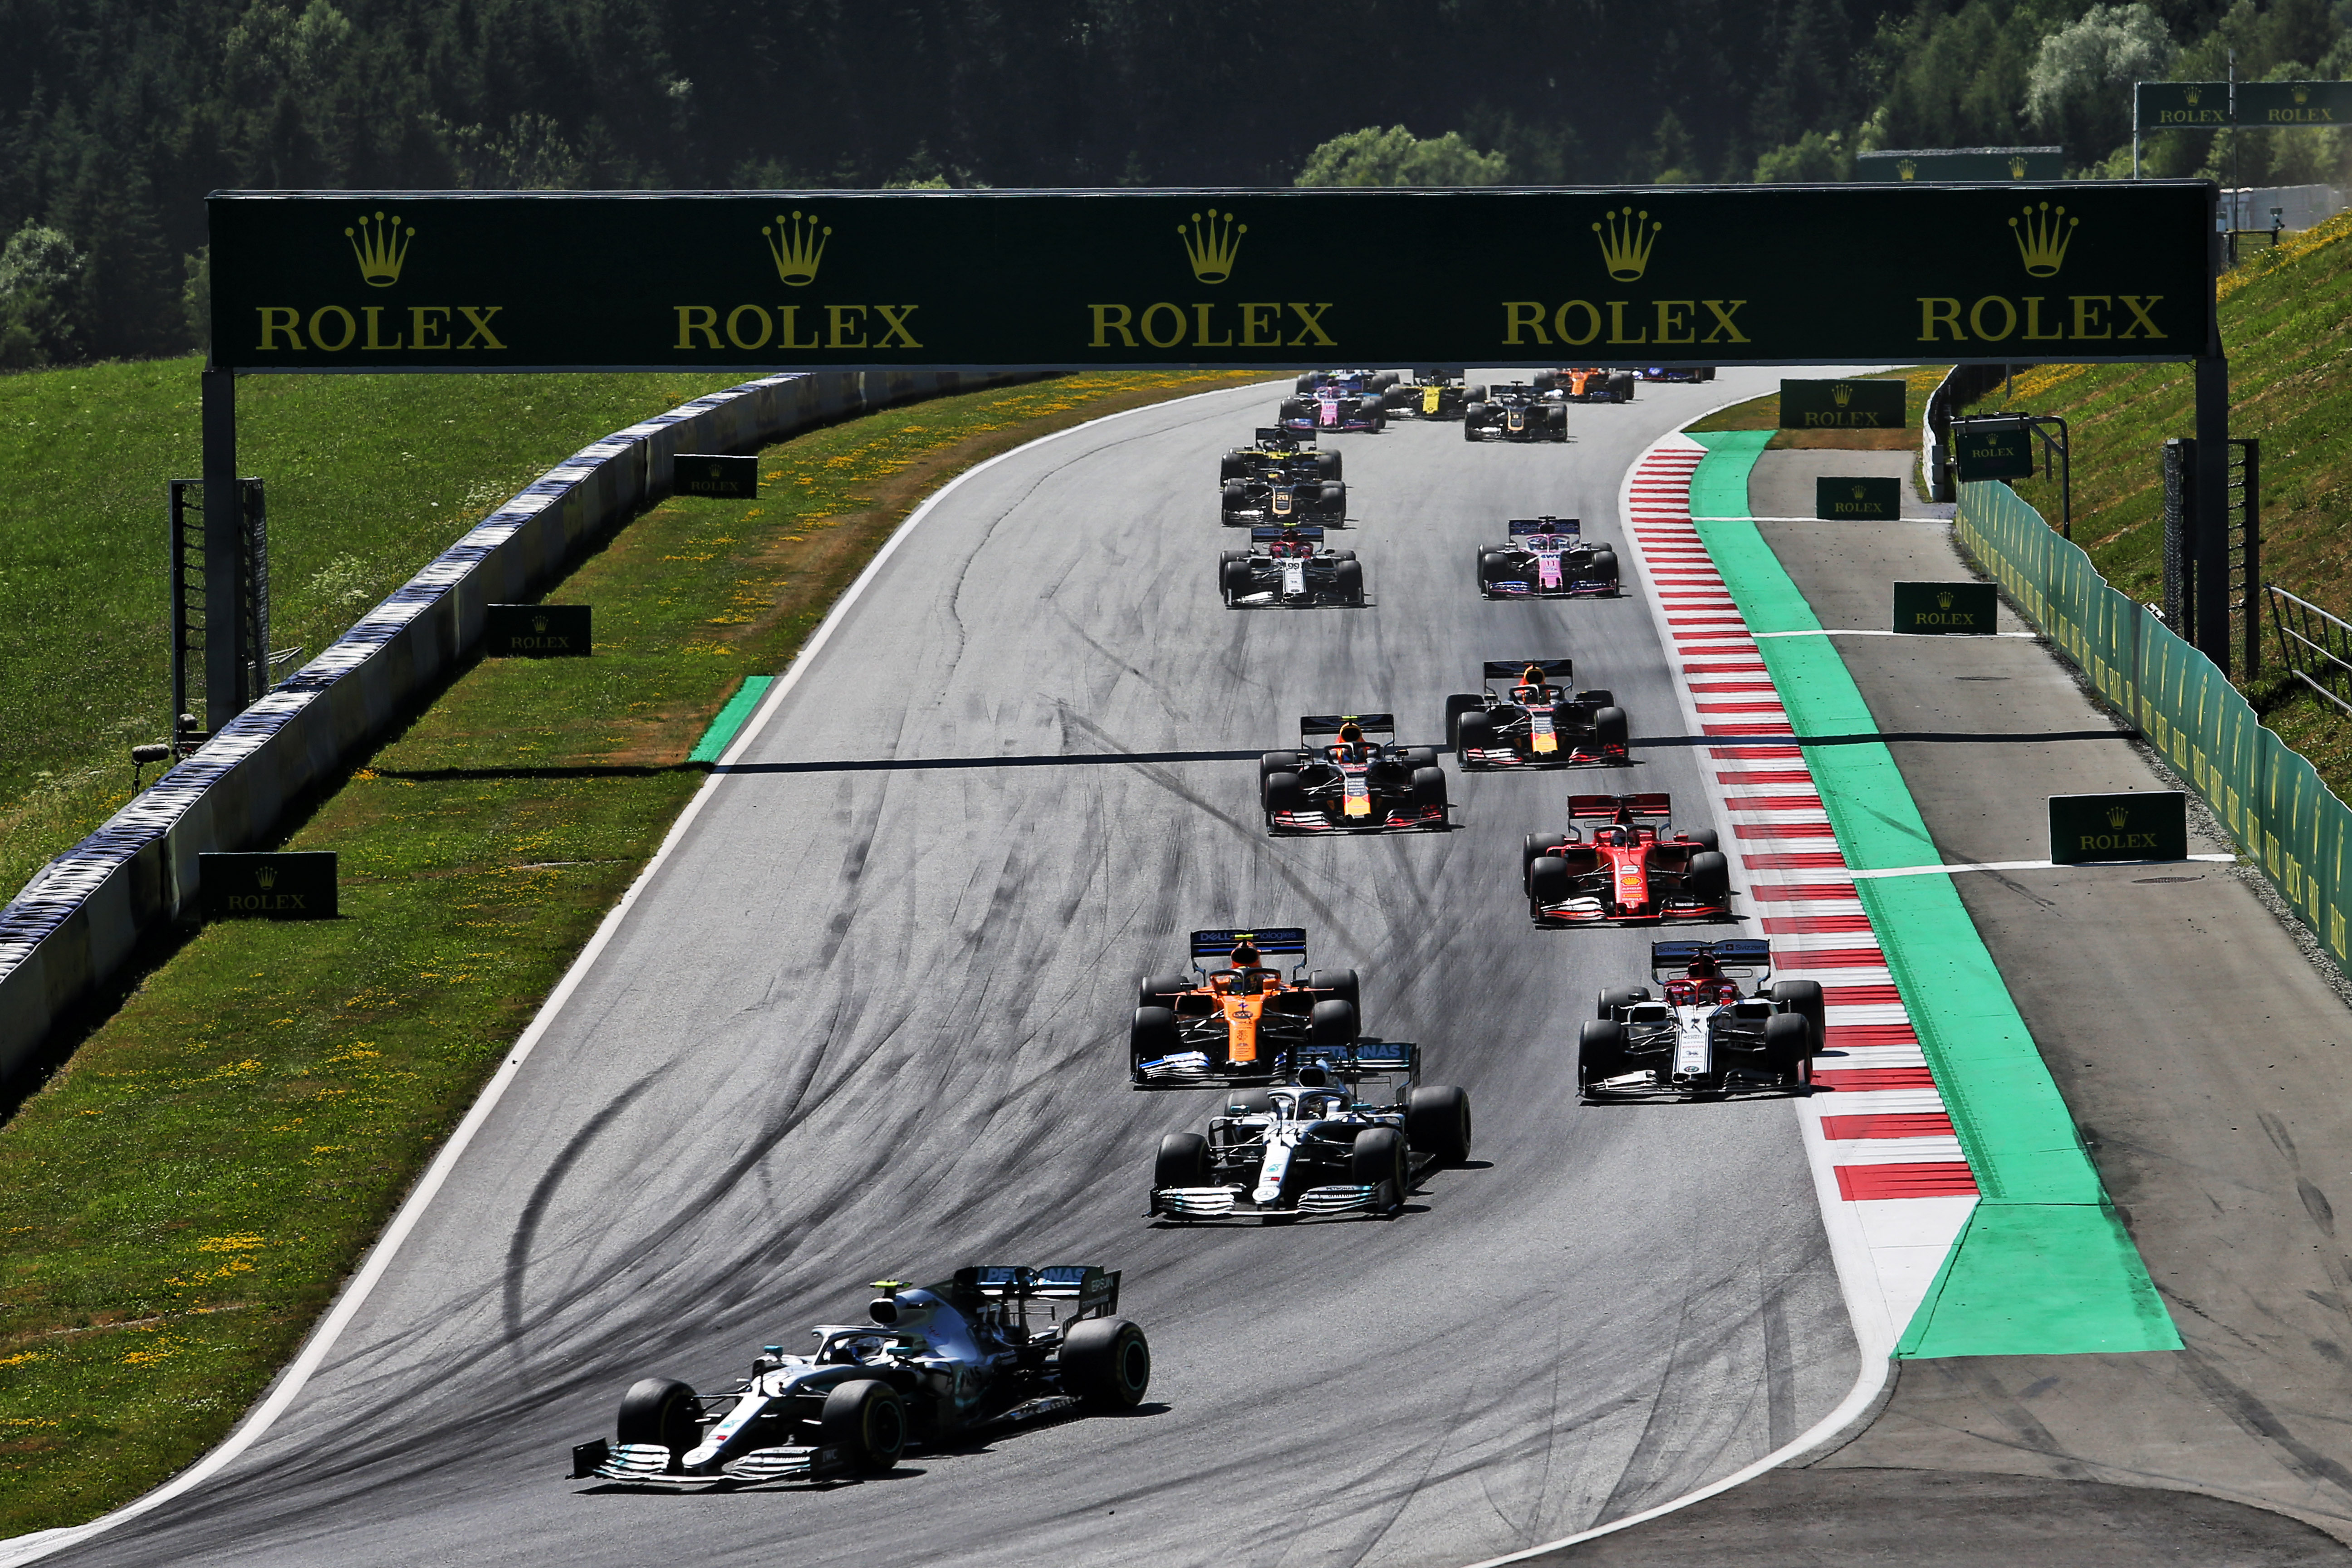 Austrian Grand Prix 2019